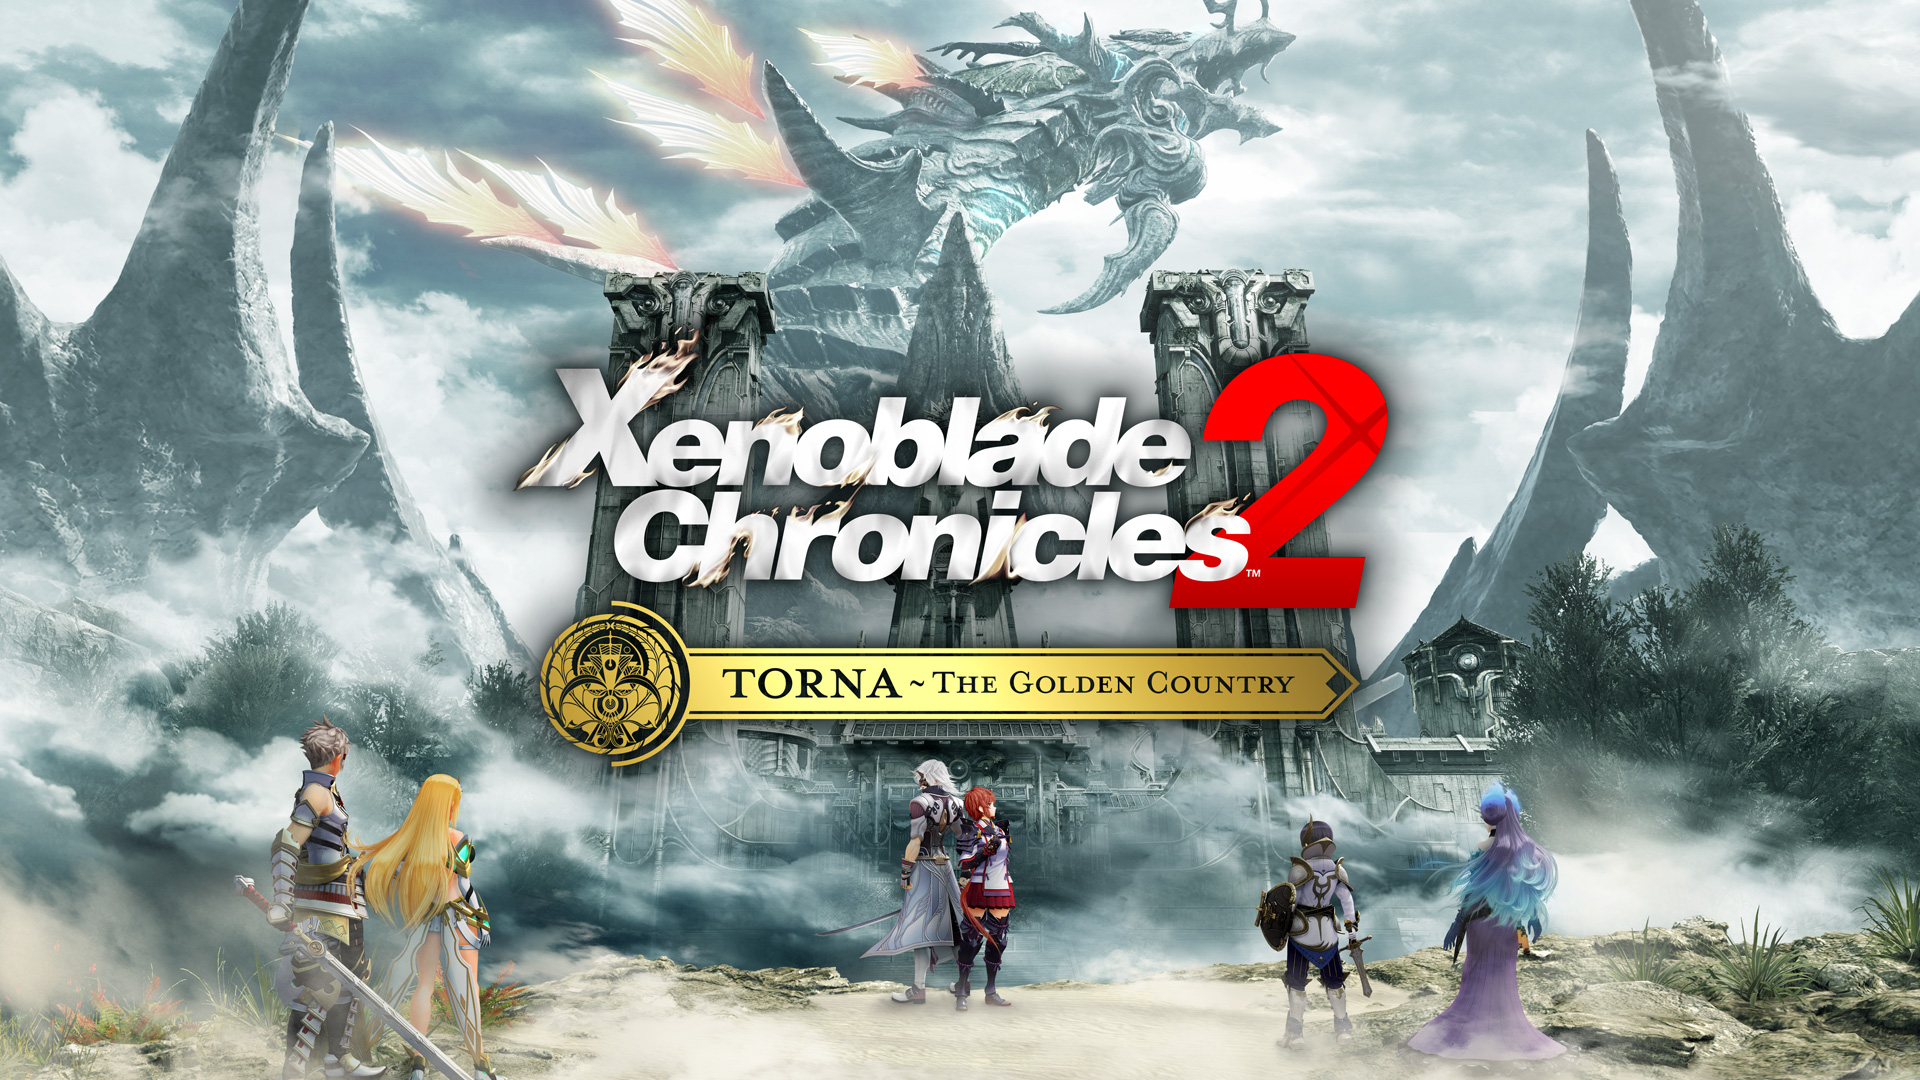 Xenoblade Chronicles 2 - Official Game Trailer - Nintendo E3 2017 